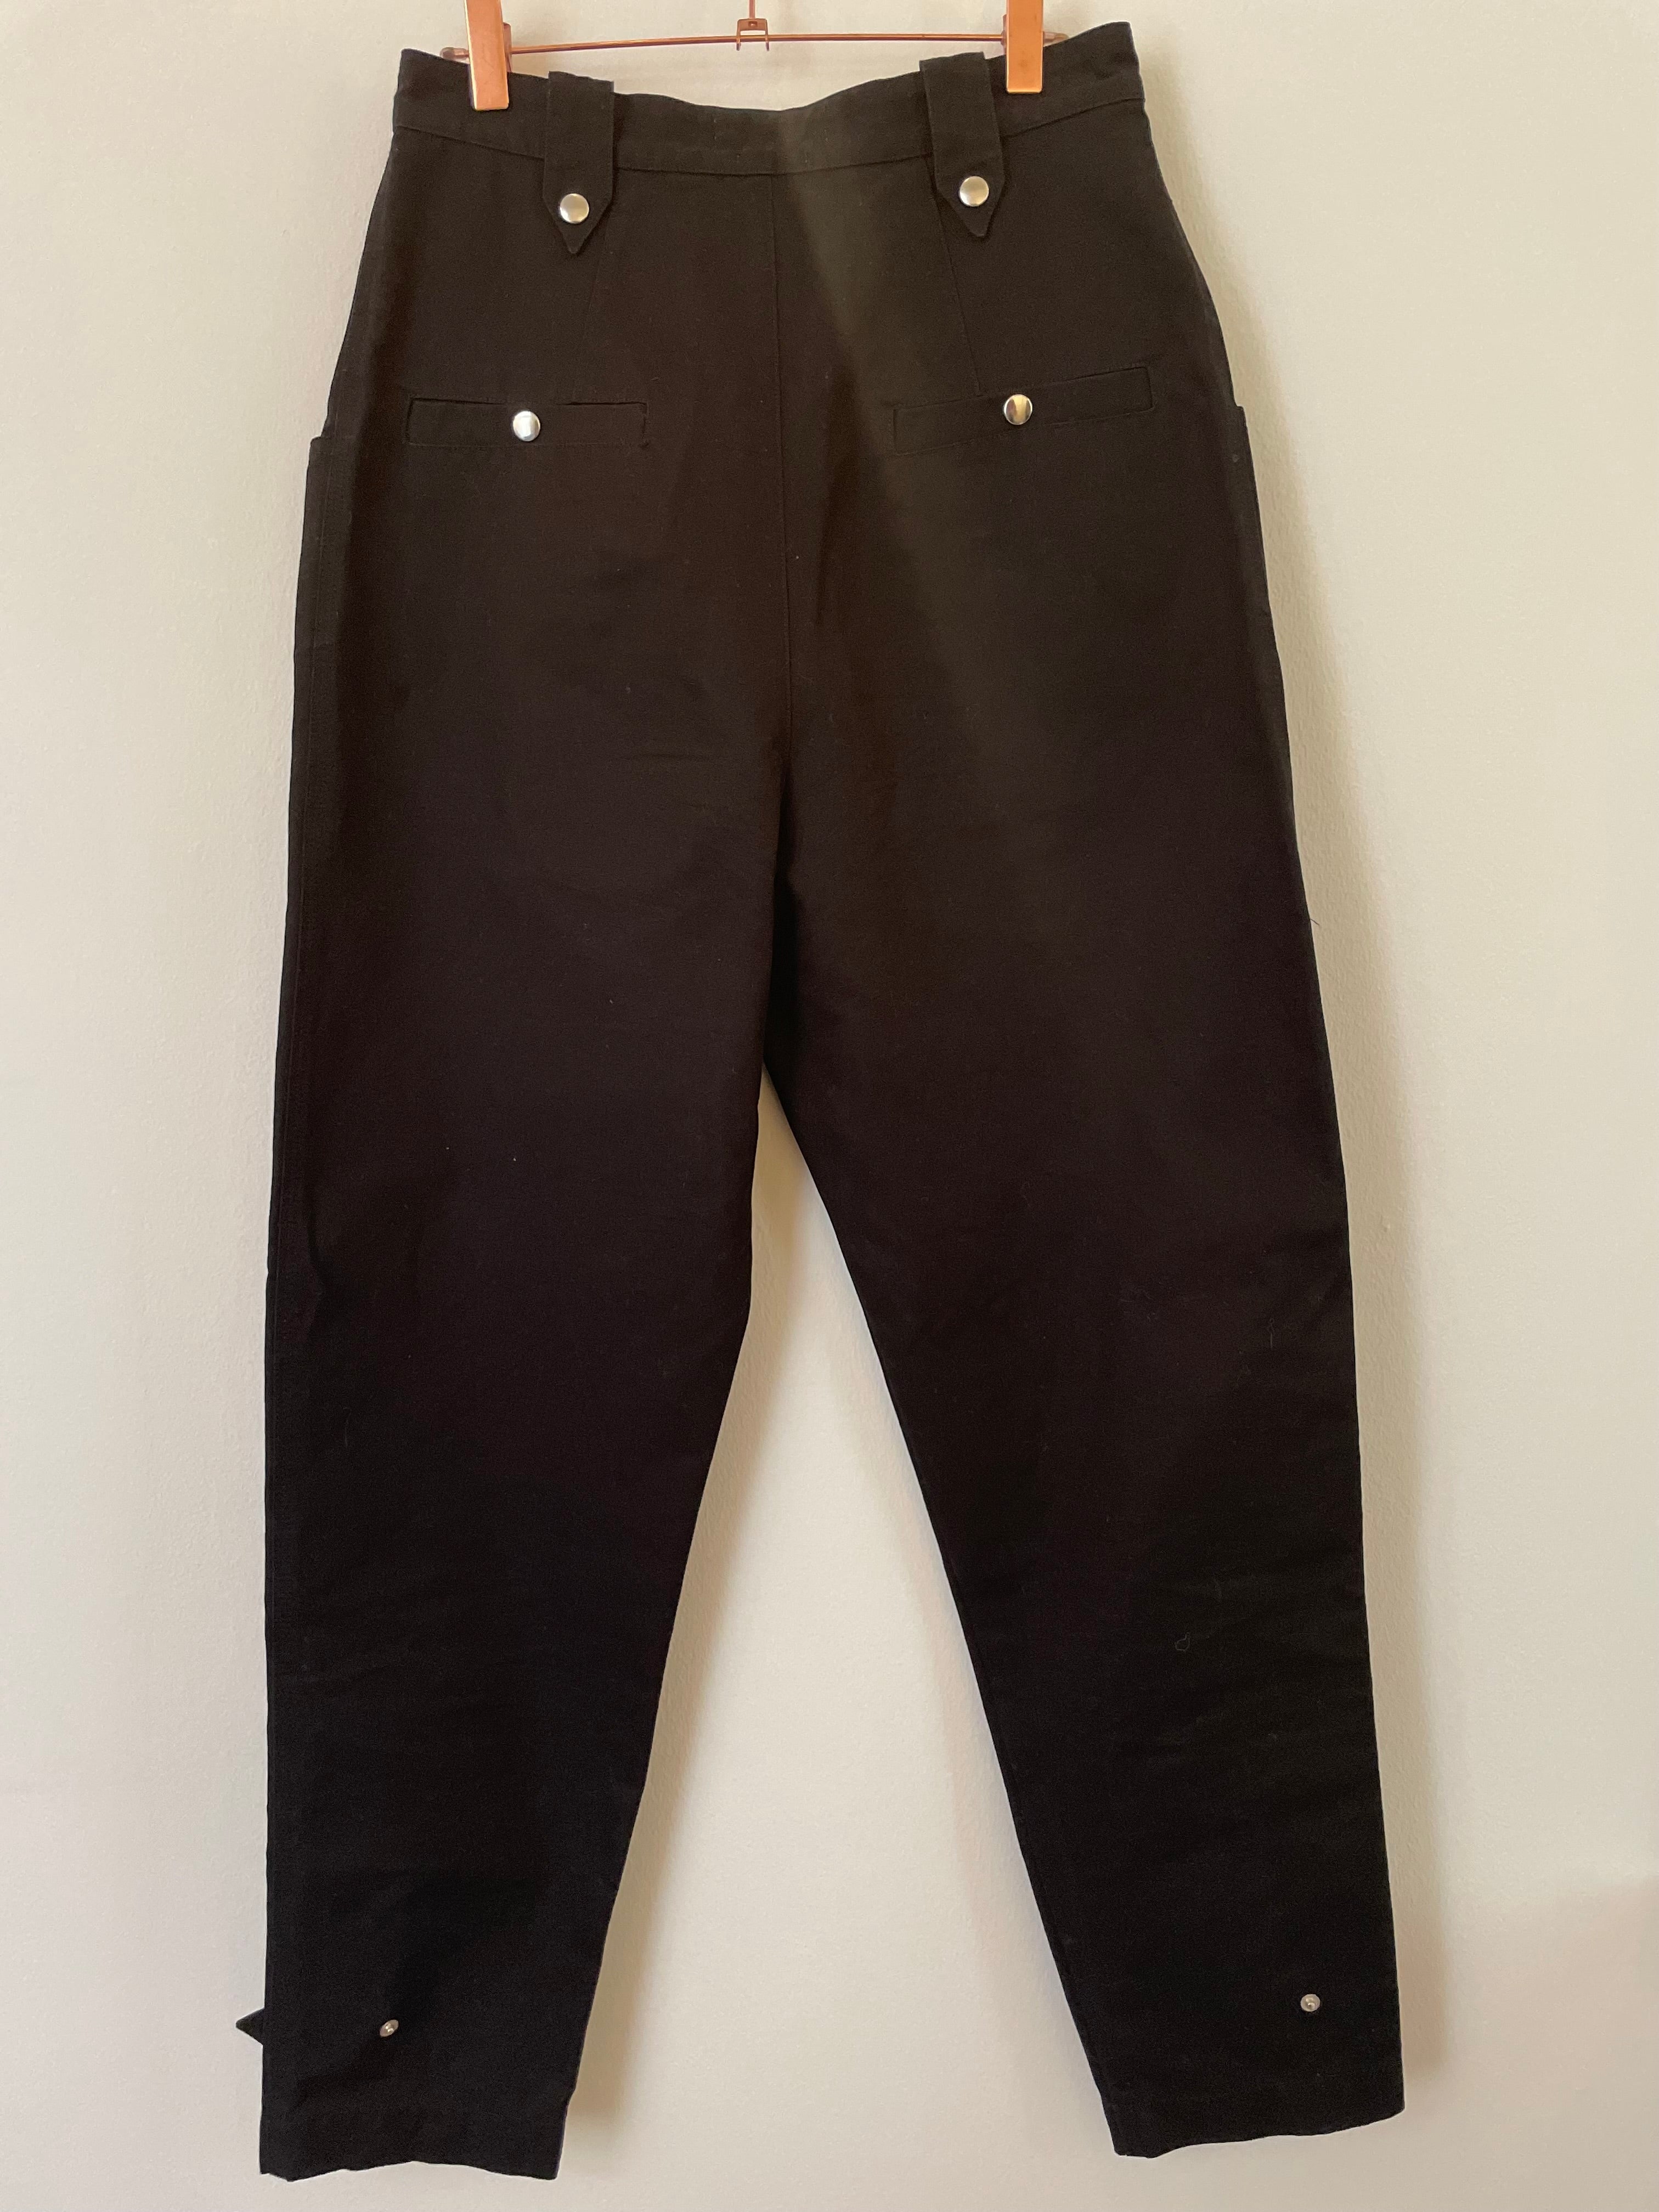 Black trousers - ISABEL MARANT ETOILE - 38EU/UK10